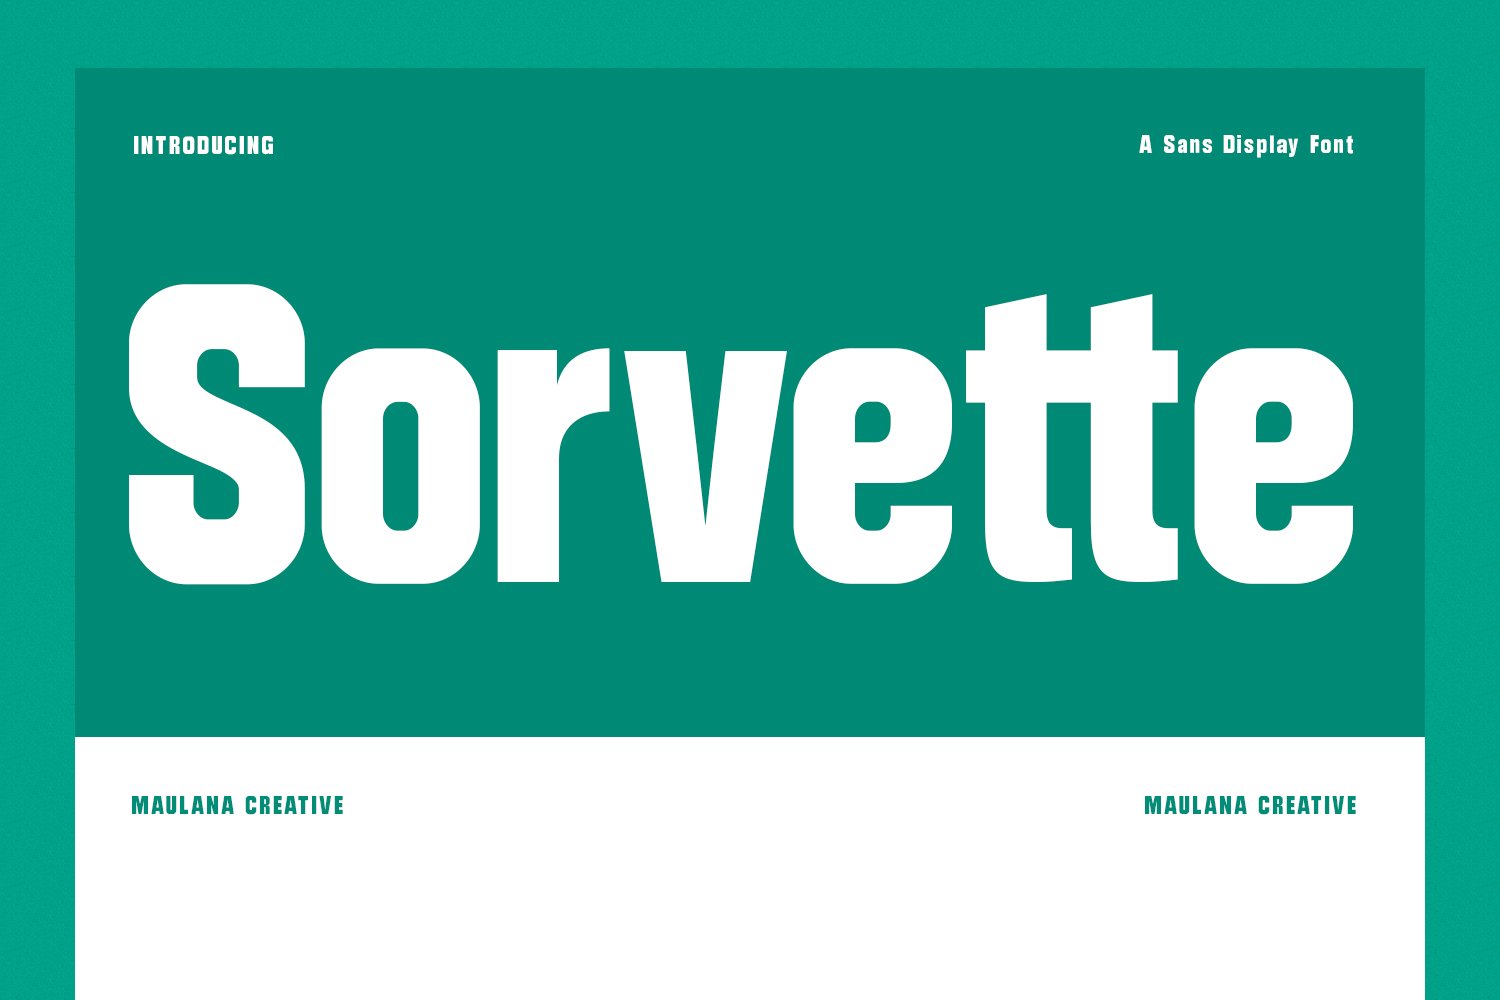 Sorvette Sans Display Font cover image.